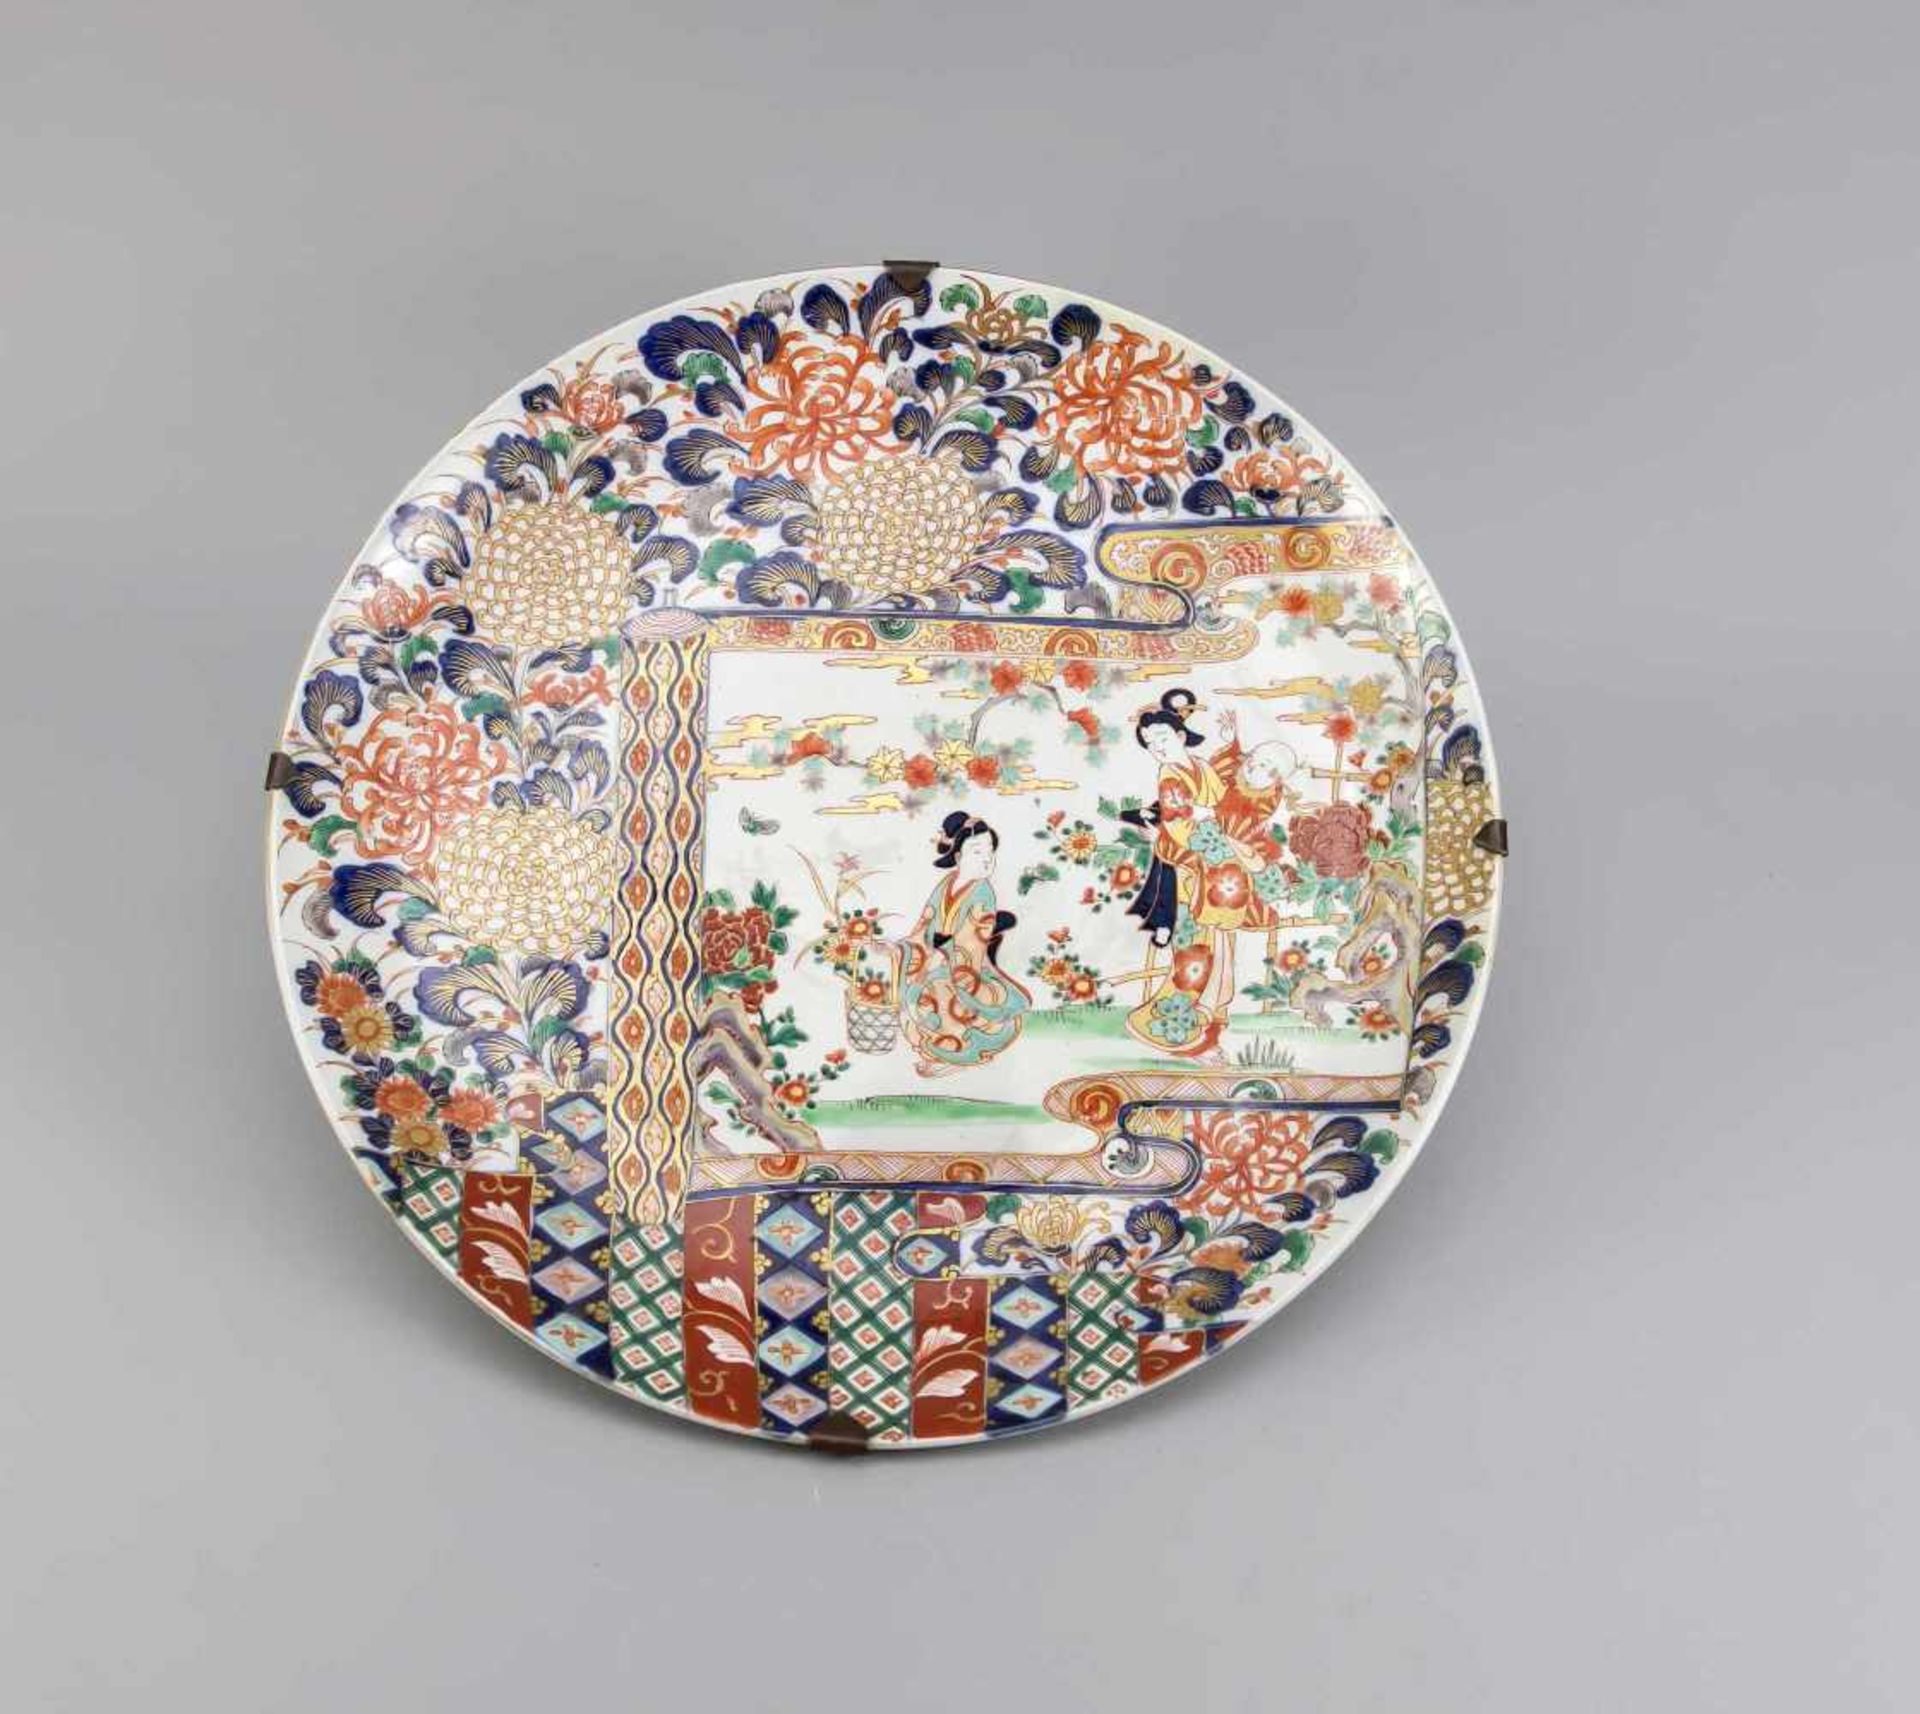 Großer Imari-Teller, Japan, wohl 1. H. 18. Jh., im Spiegel eine Bildrolle mit einer